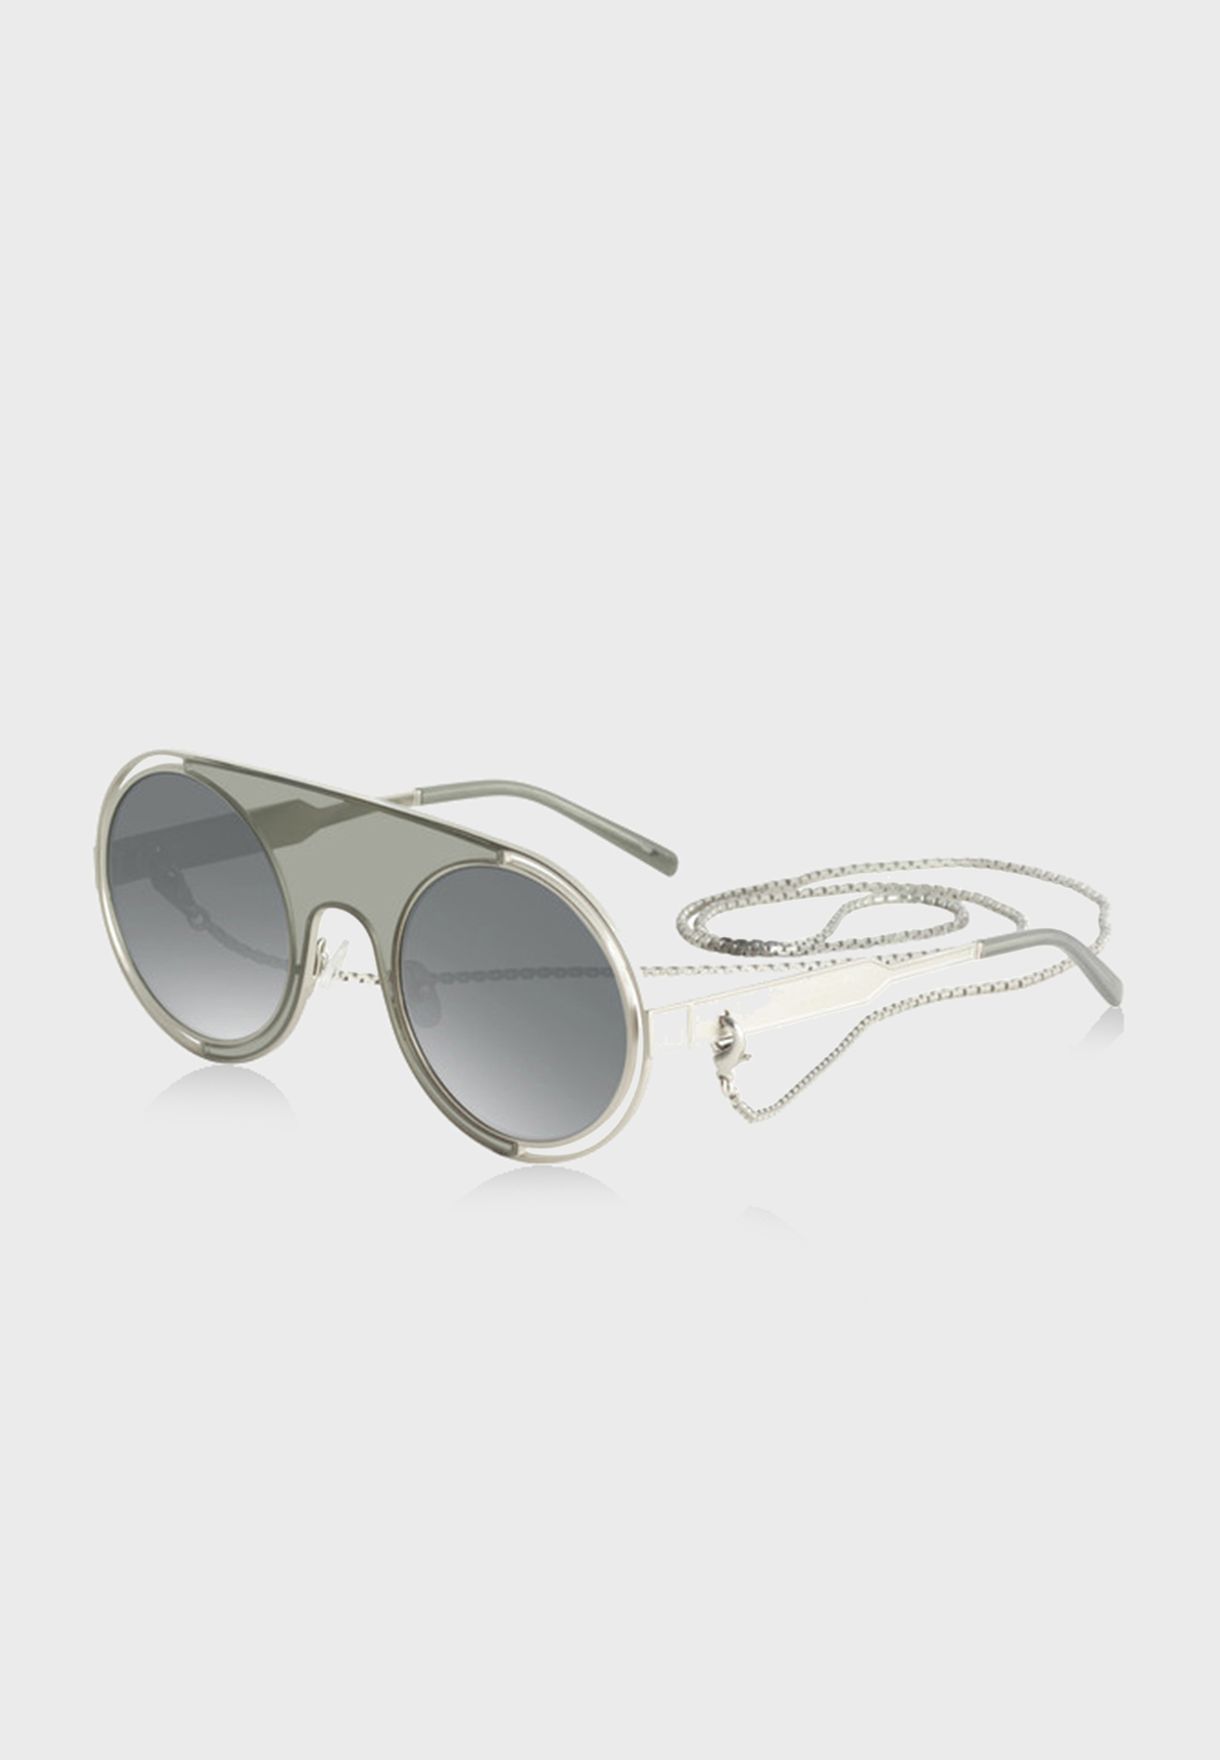 L SR778602 Round Sunglasses